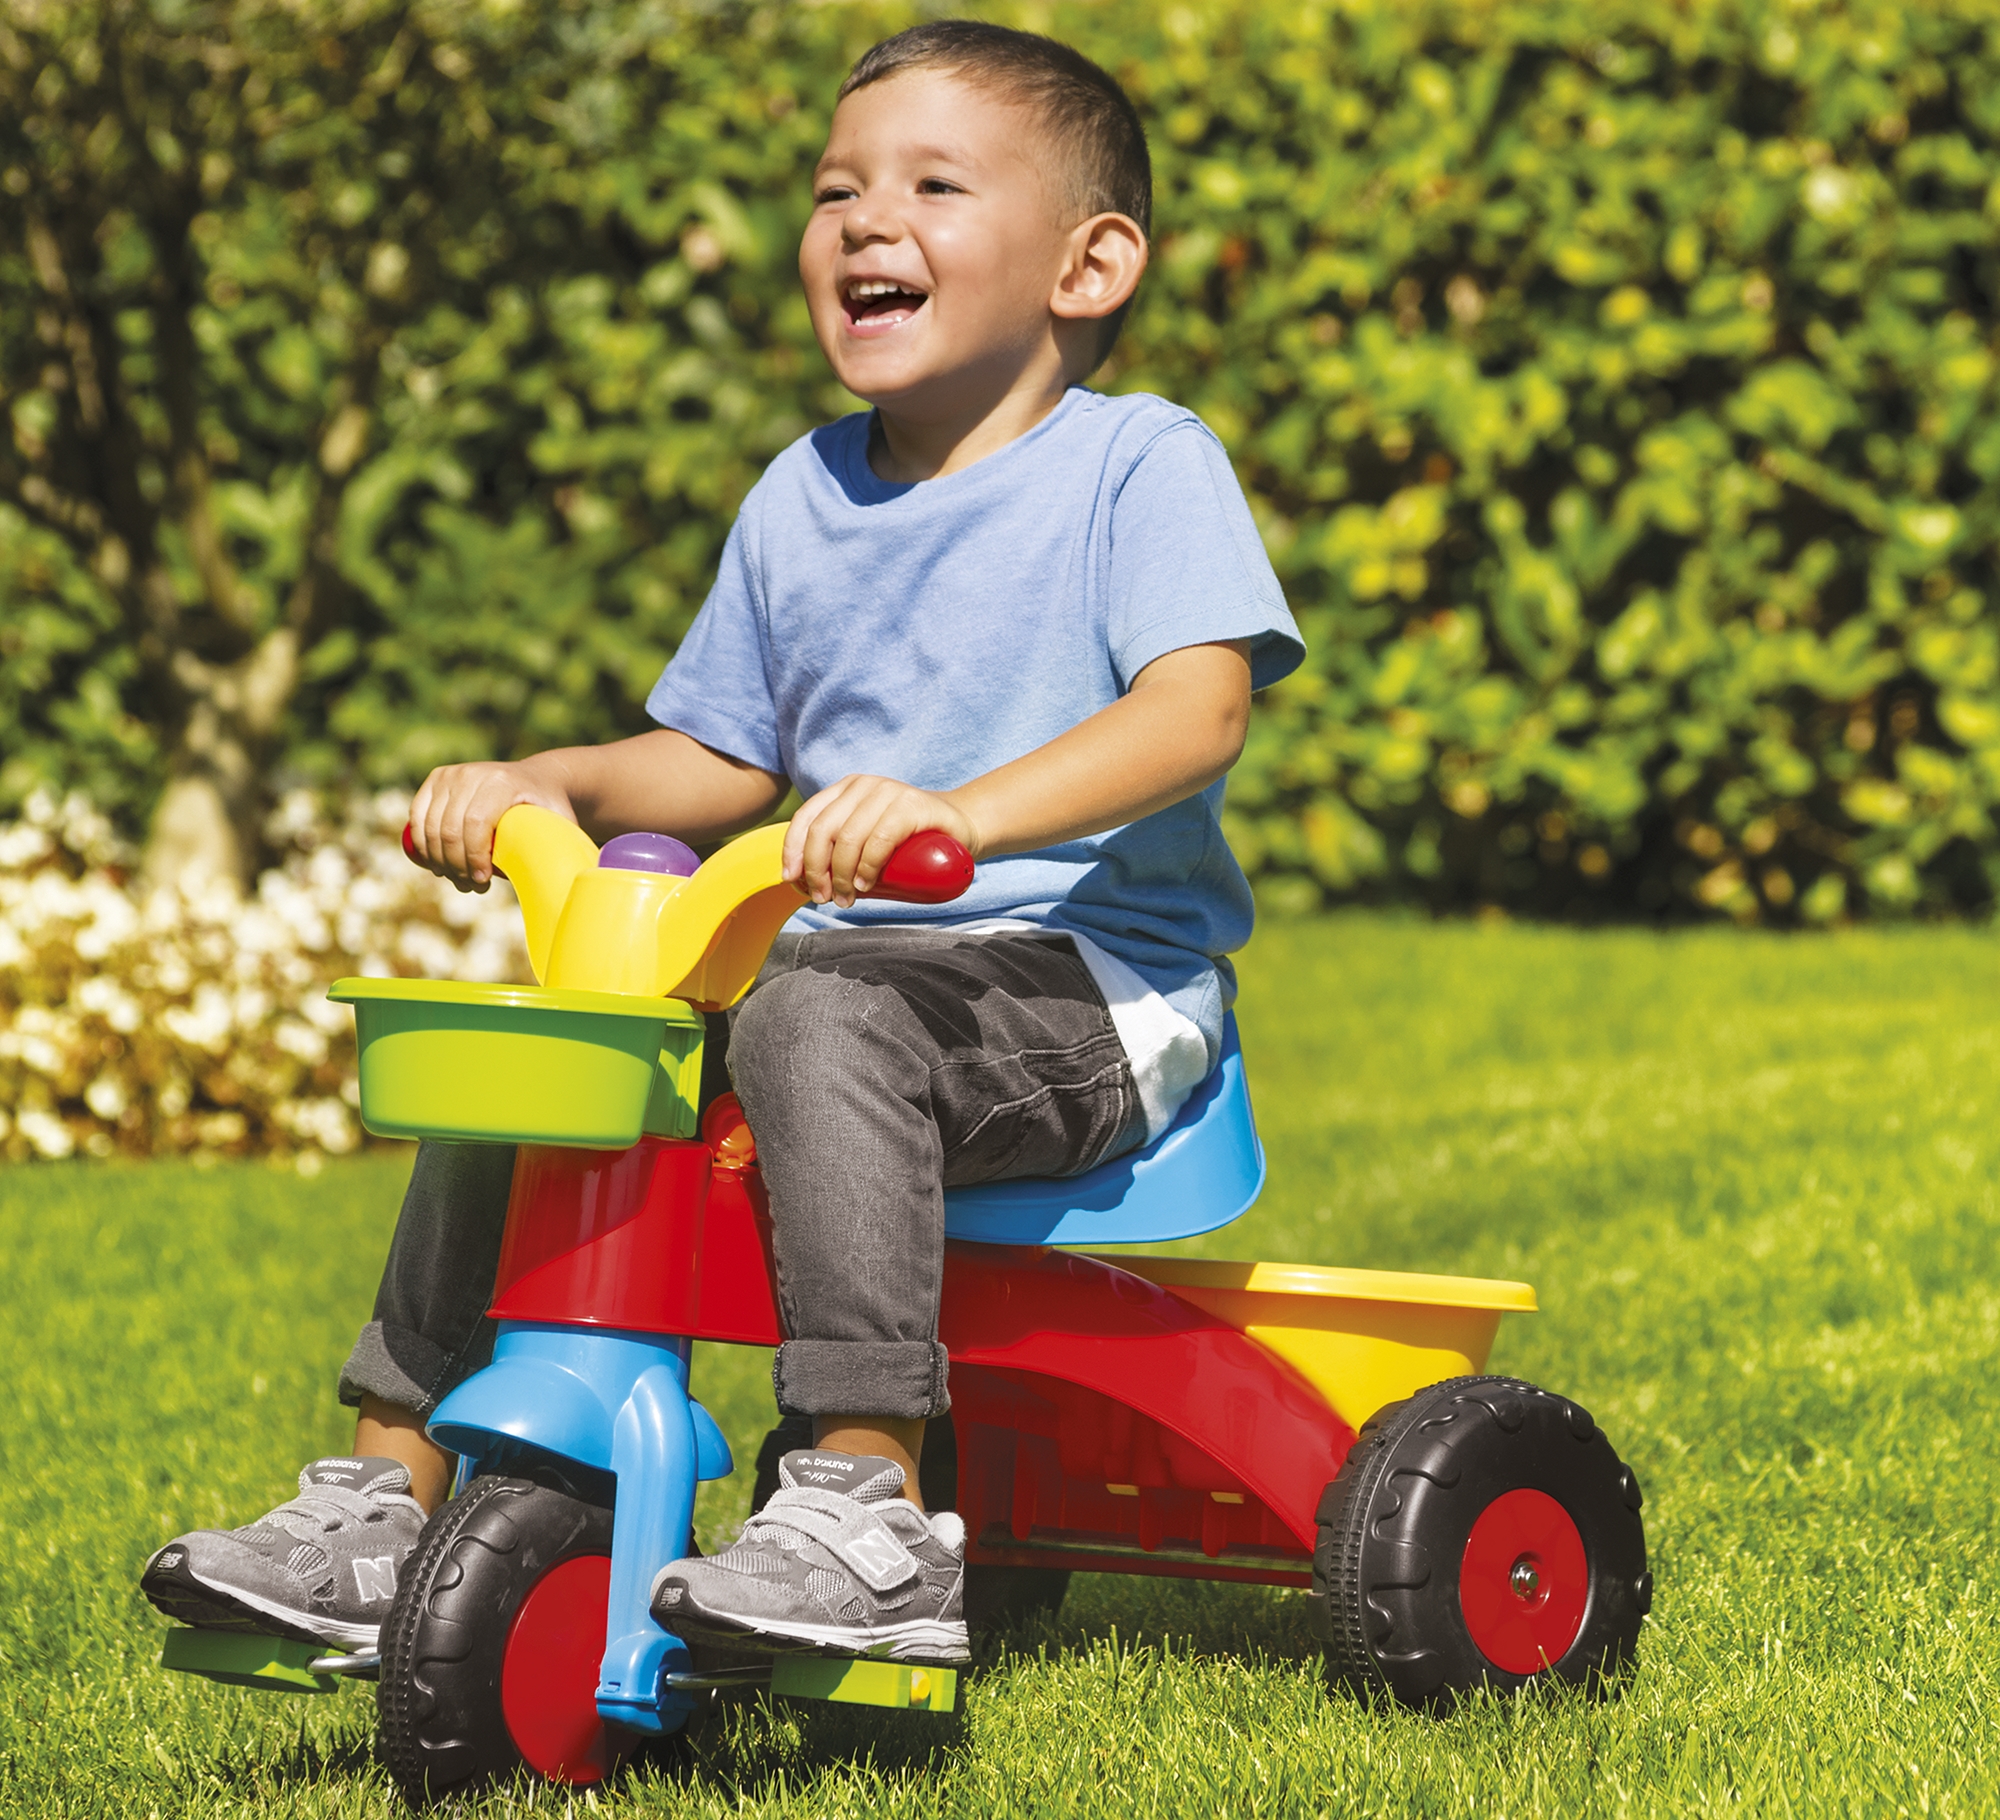 Tříkolka Dolu My 1st Trike má oproti běžnému kolu výrazně lepší jízdní vlastnosti a je tedy vhodná pro malé děti od 2 let.